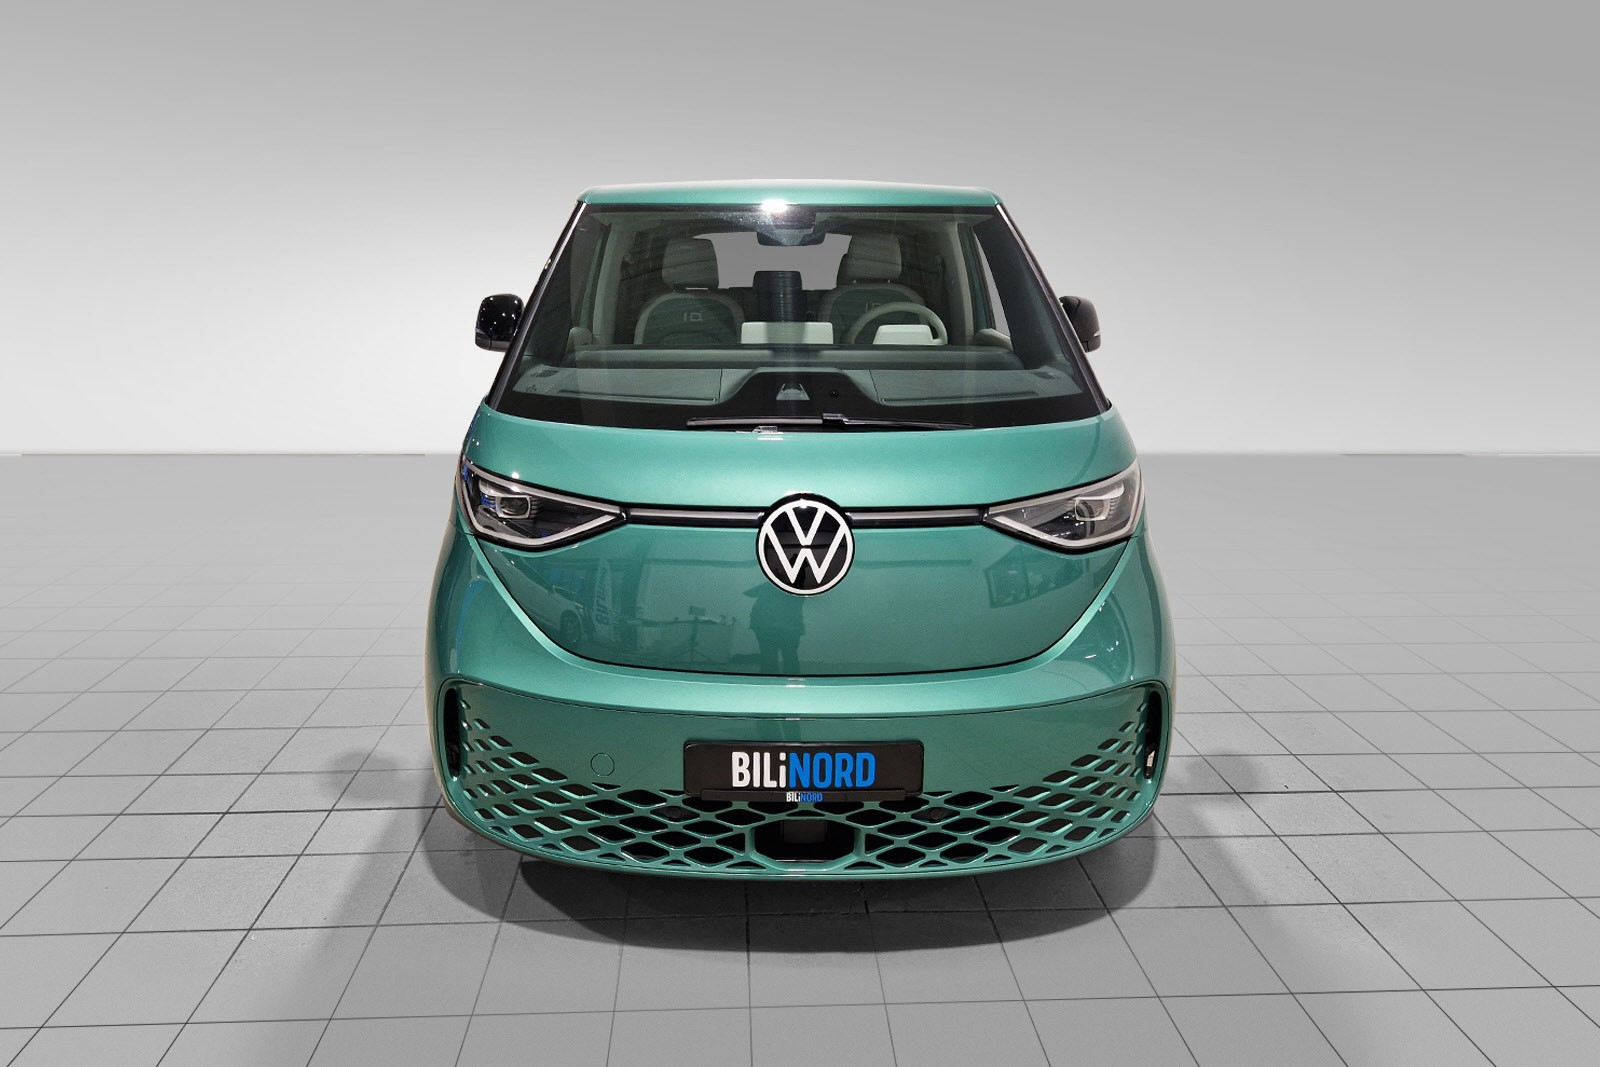 Stor VW-logo i front. Led Matrix gir svært godt lys i mørket